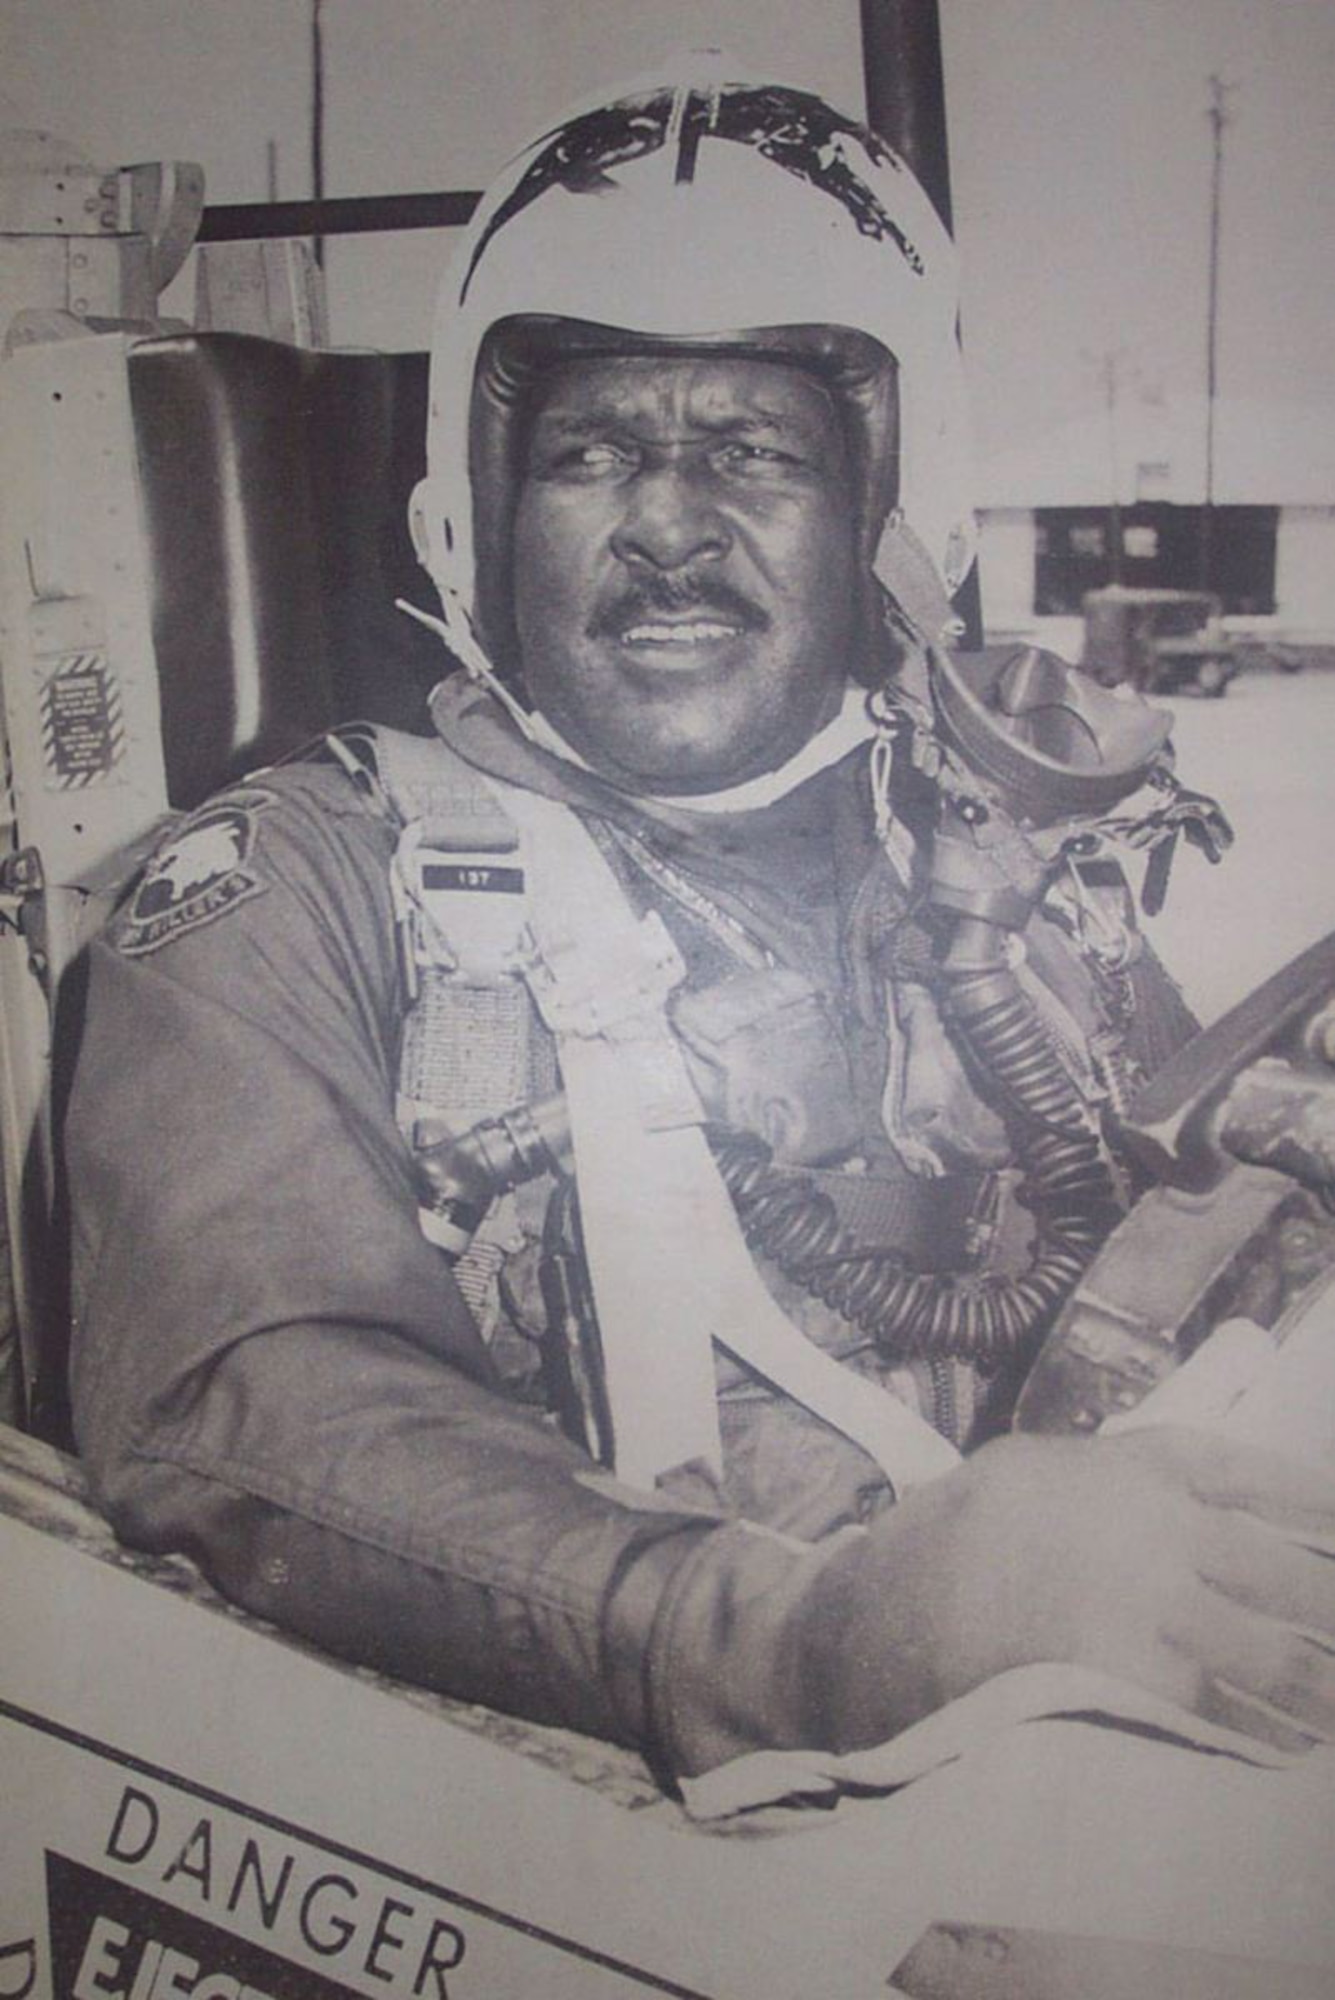 Daniel "Chappie" James Jr. as an F-4 pilot during the Vietnam War.